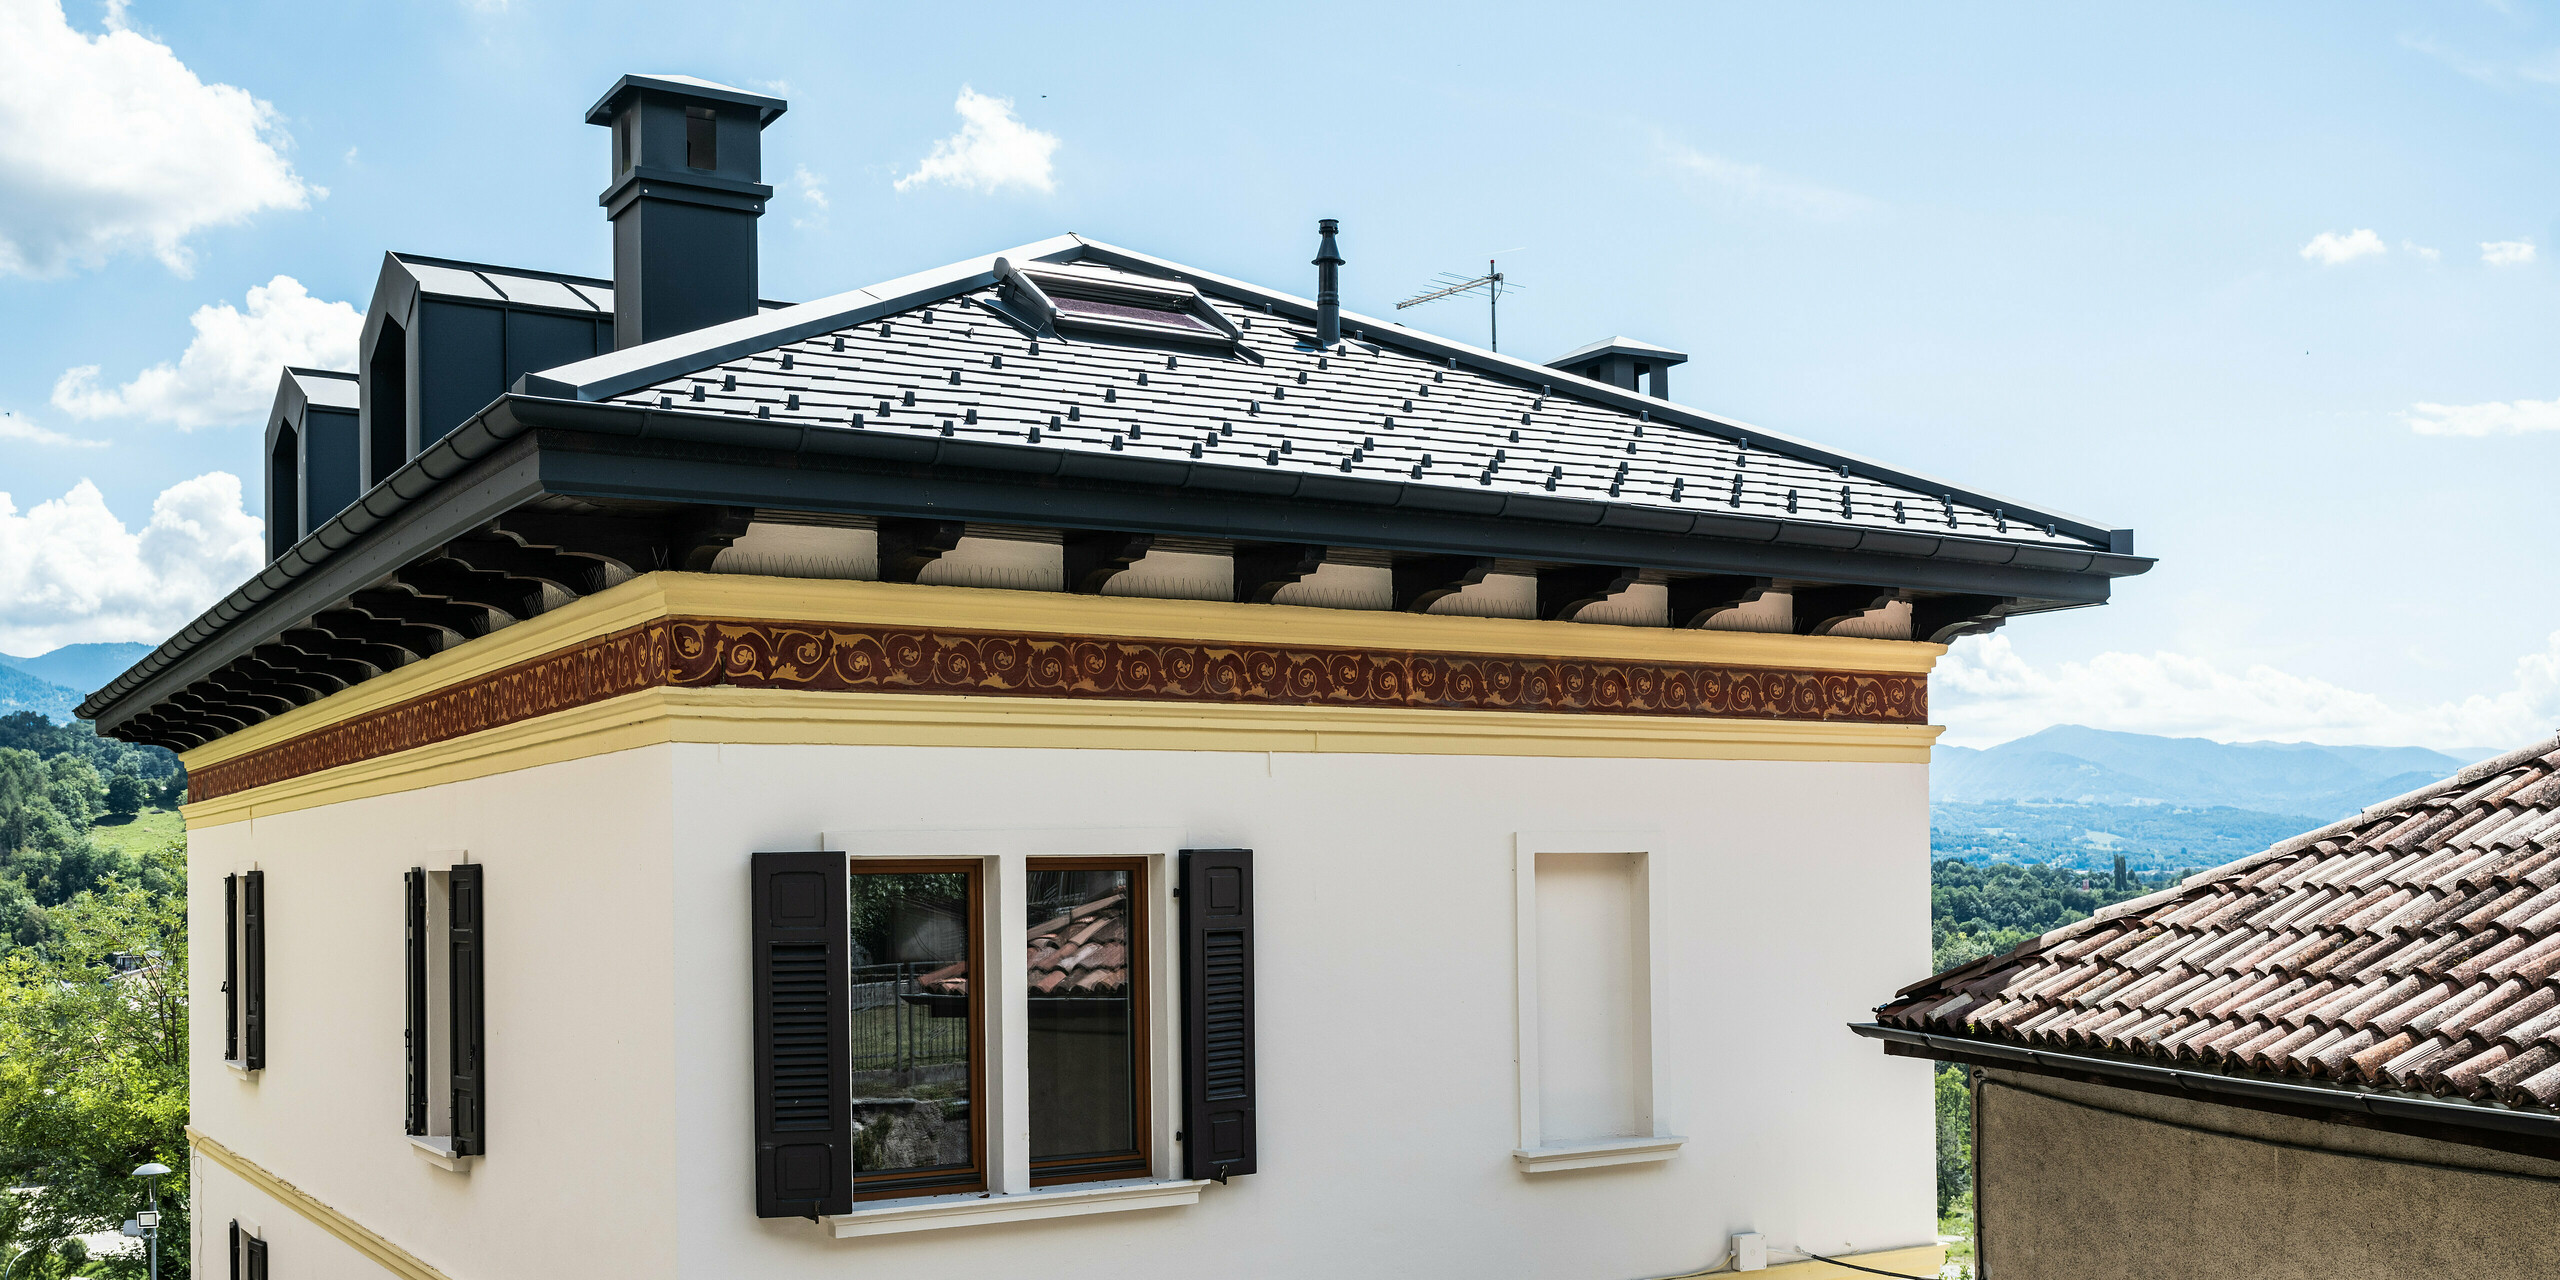 Restauriertes Gebäude in Belluno, gekennzeichnet durch ein PREFA Dach mit anthrazitfarbenen Aluminiumschindeln, die die strukturelle Integrität wahren. Die klassische Fassade mit dekorativen Frieselementen fügt sich nahtlos in die malerische italienische Landschaft ein und wird durch das moderne, langlebige und stilvolle PREFA Dachsystem in der Farbe P.10 Anthrazit abgerundet.